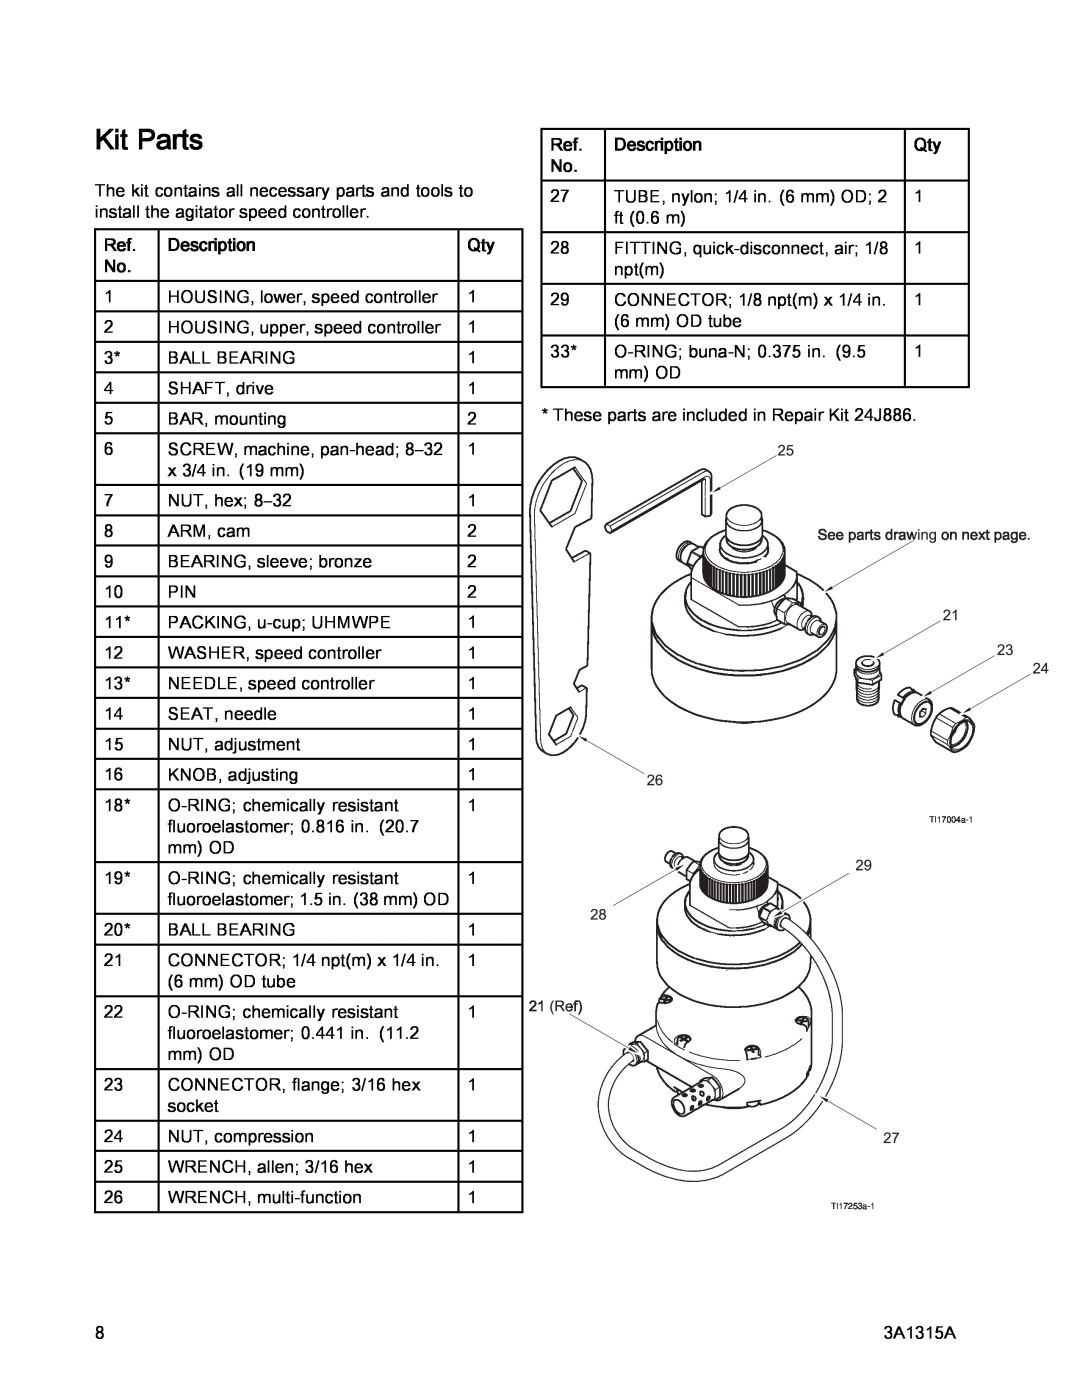 Graco 3A1315A, 24G621 important safety instructions Kit Parts, Description 